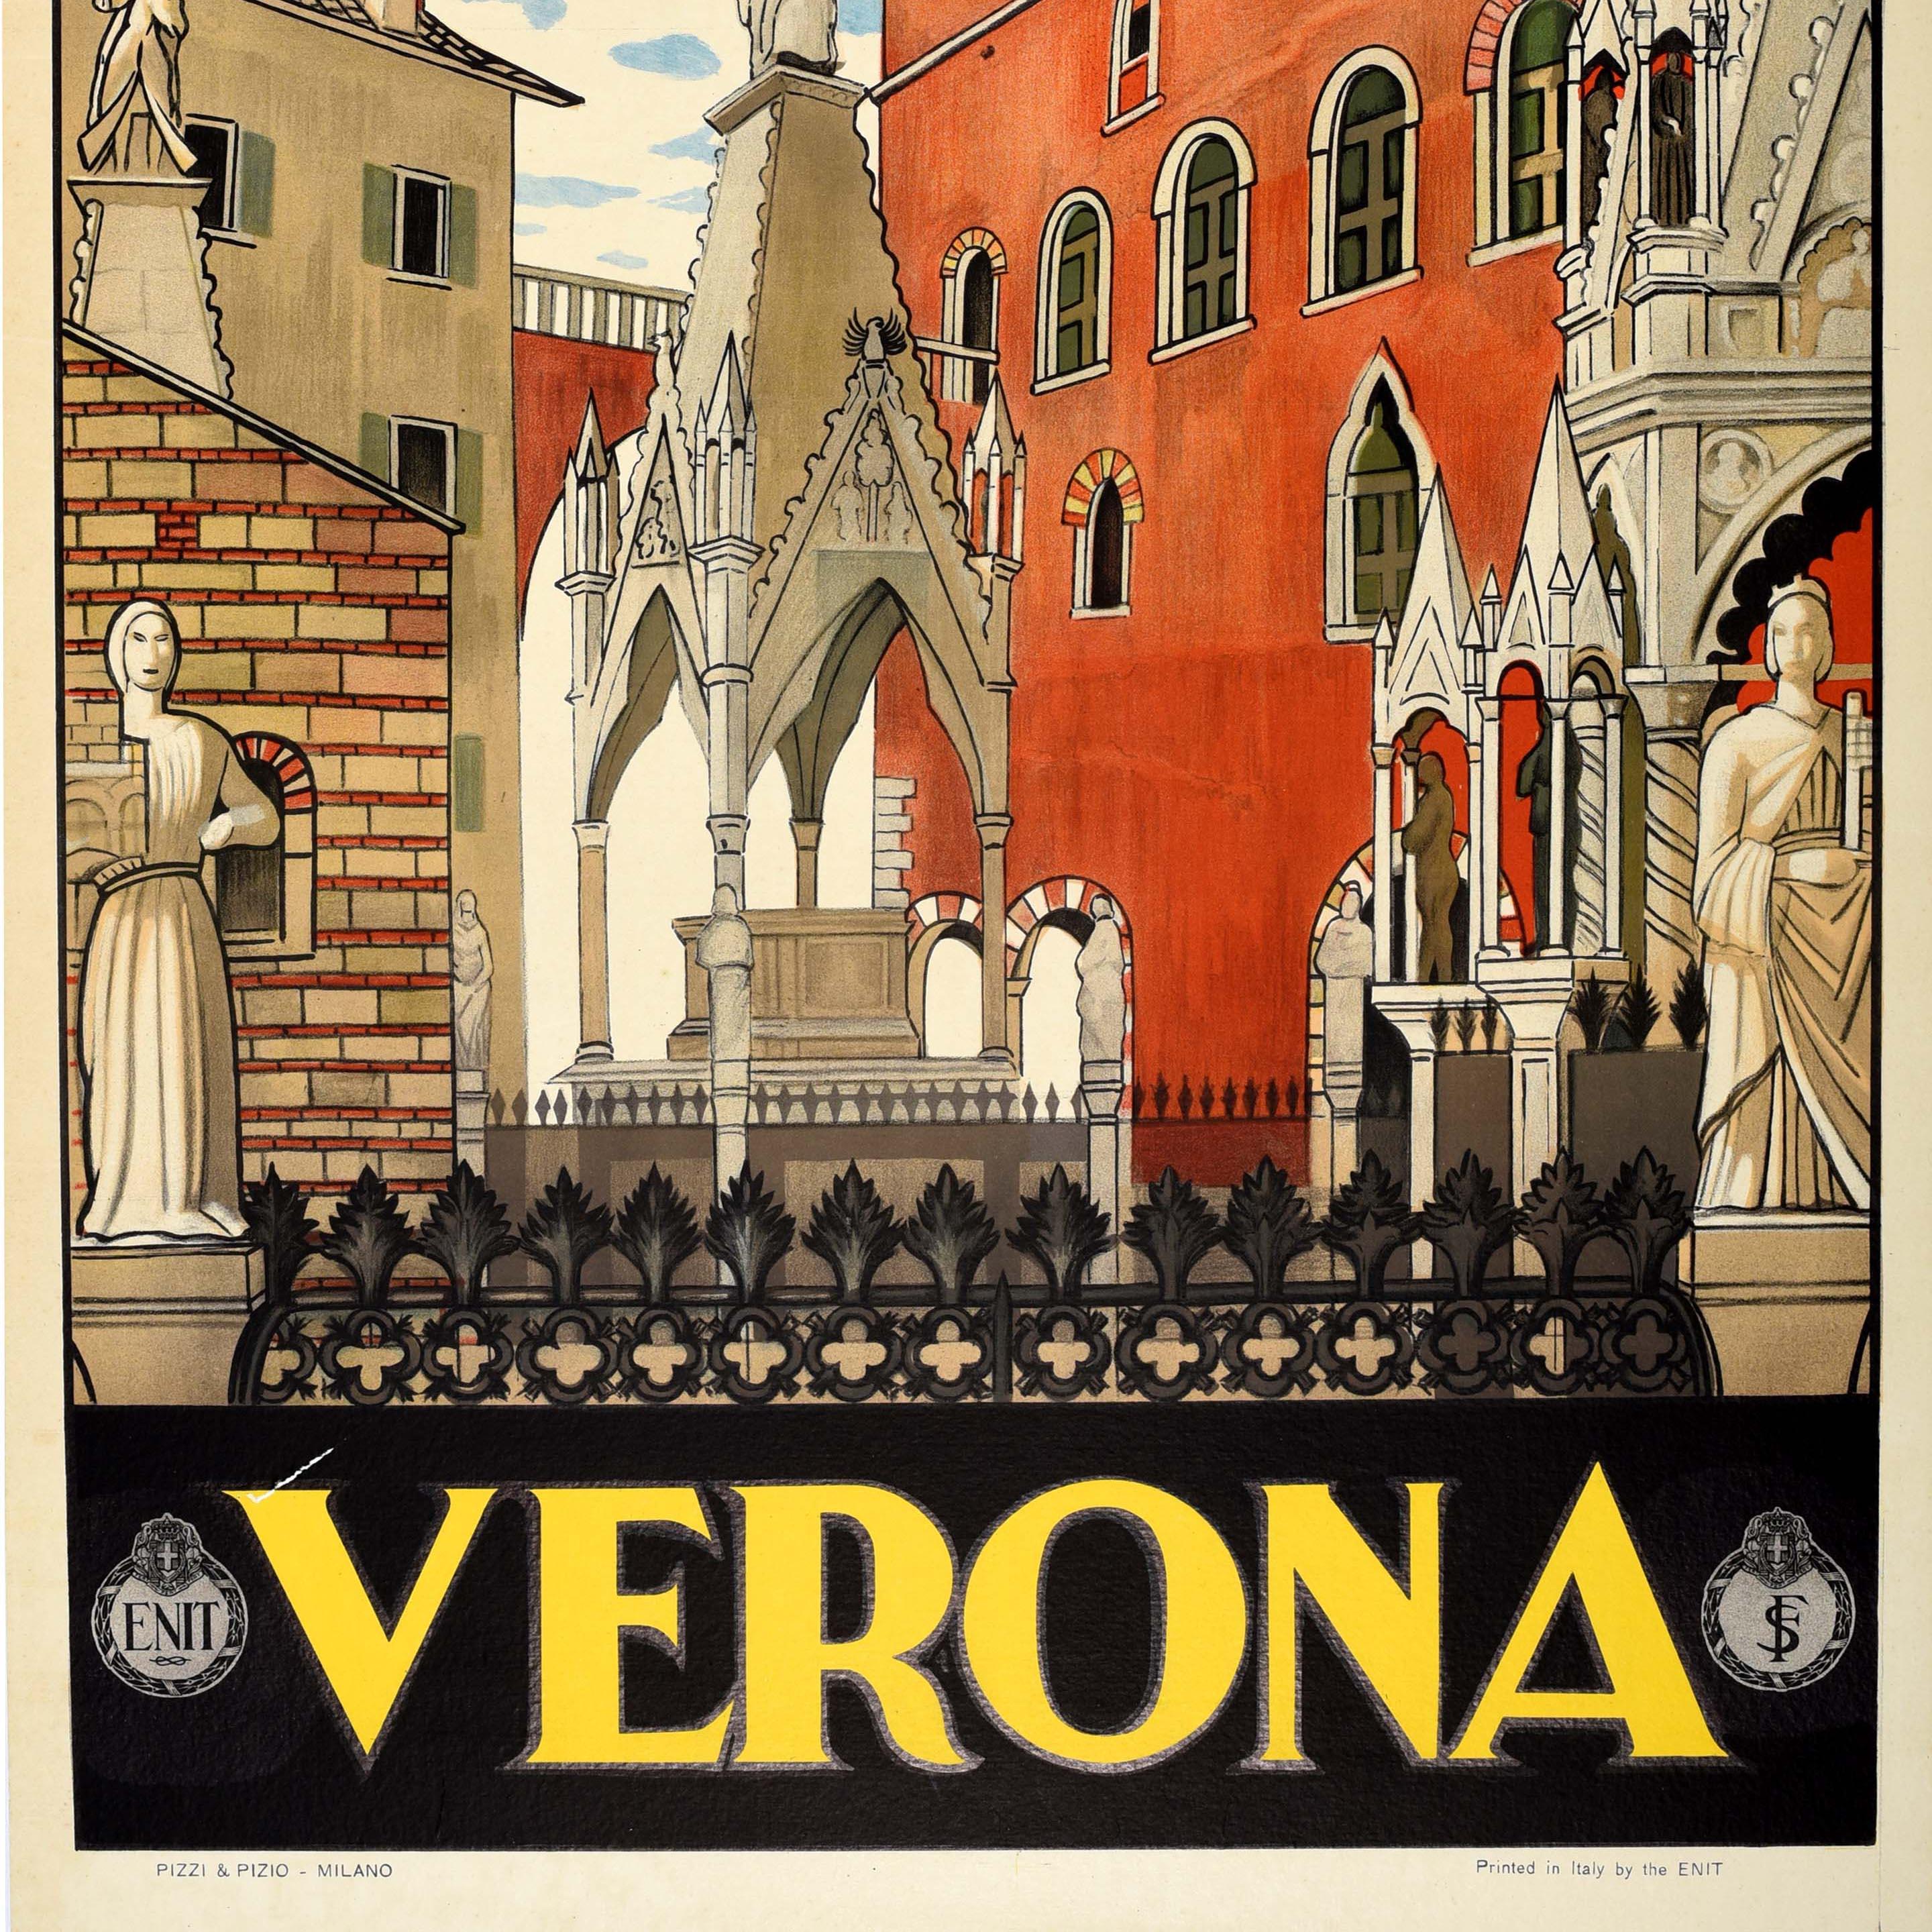 Original Vintage-Reiseplakat mit Werbung für Verona, herausgegeben vom italienischen Reisebüro ENIT. Großartiges Bild, das einen Blick durch historische Gebäude und antike Monumente im alten Stadtzentrum von Verona zeigt, mit stilisiertem Text in